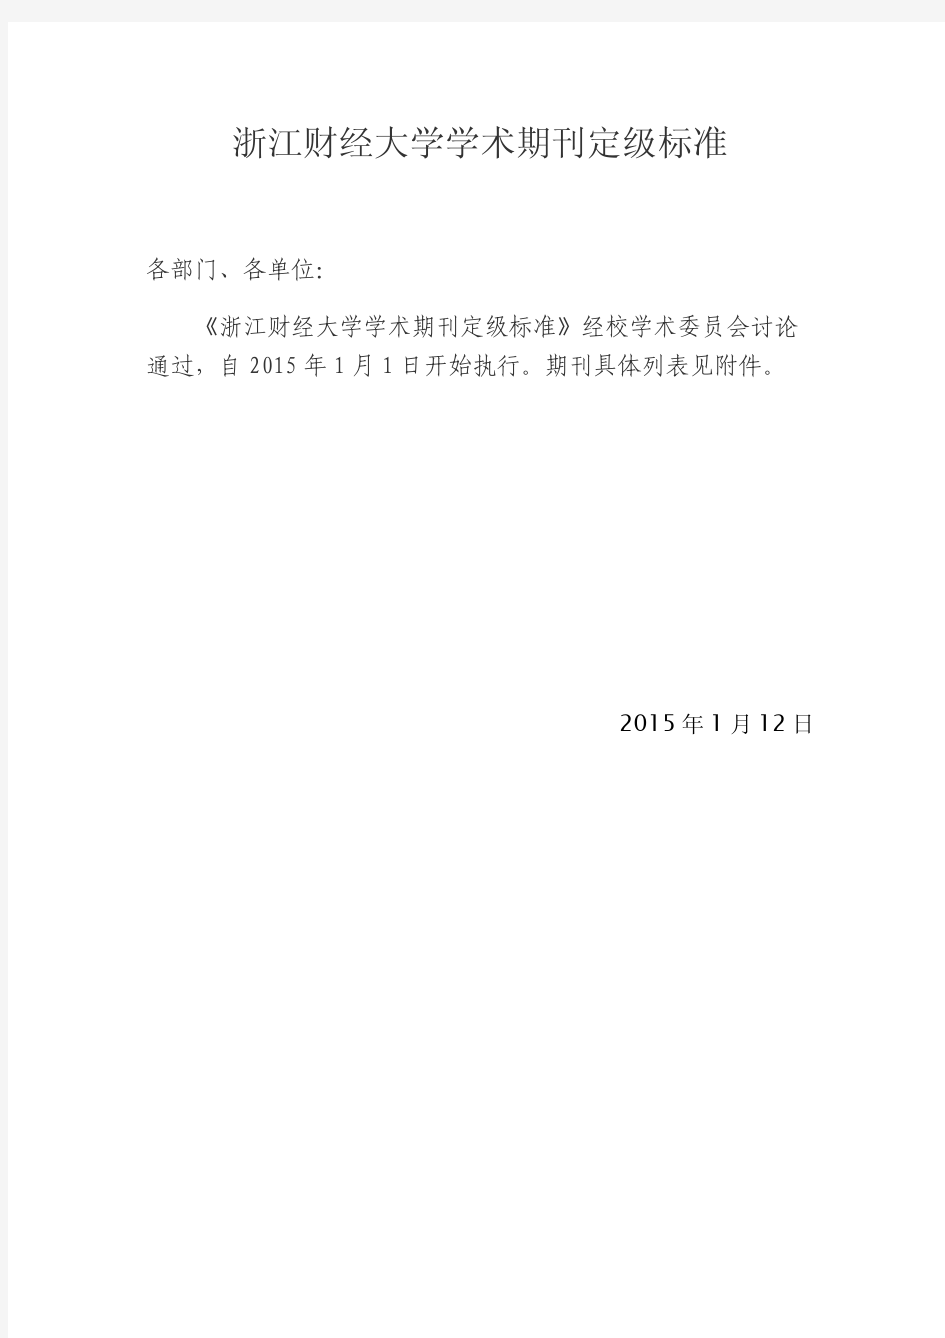 浙江财经大学学术期刊定级标准(2015.1.12)